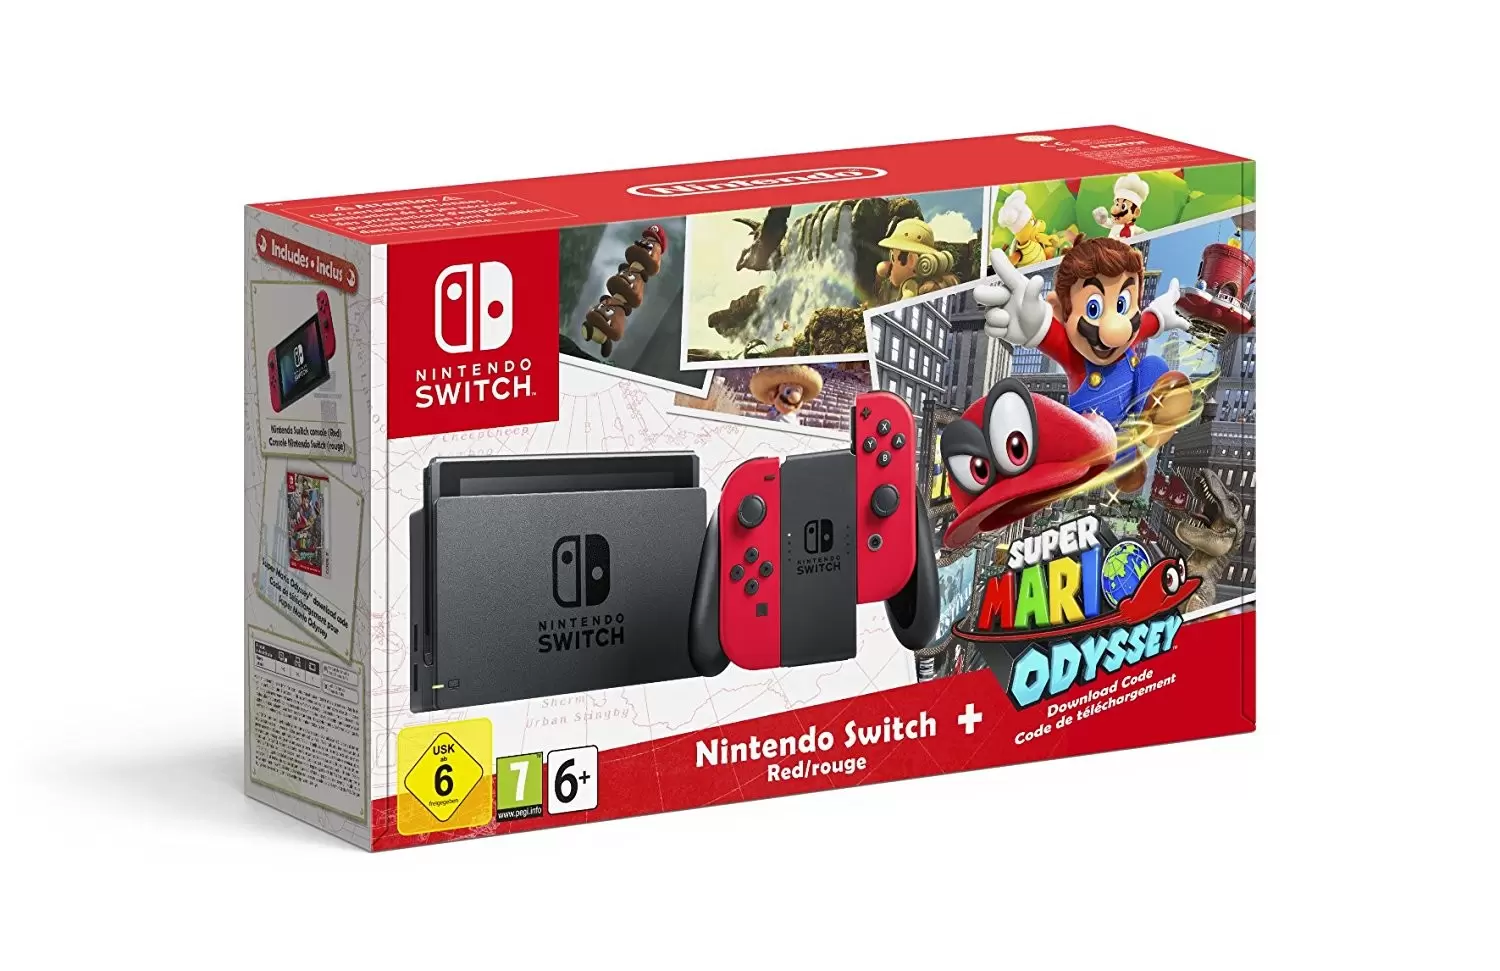 Matériel Nintendo Switch - Nintendo Switch avec Joy-Con rouges + Super Mario Odyssey - Edition Limitée